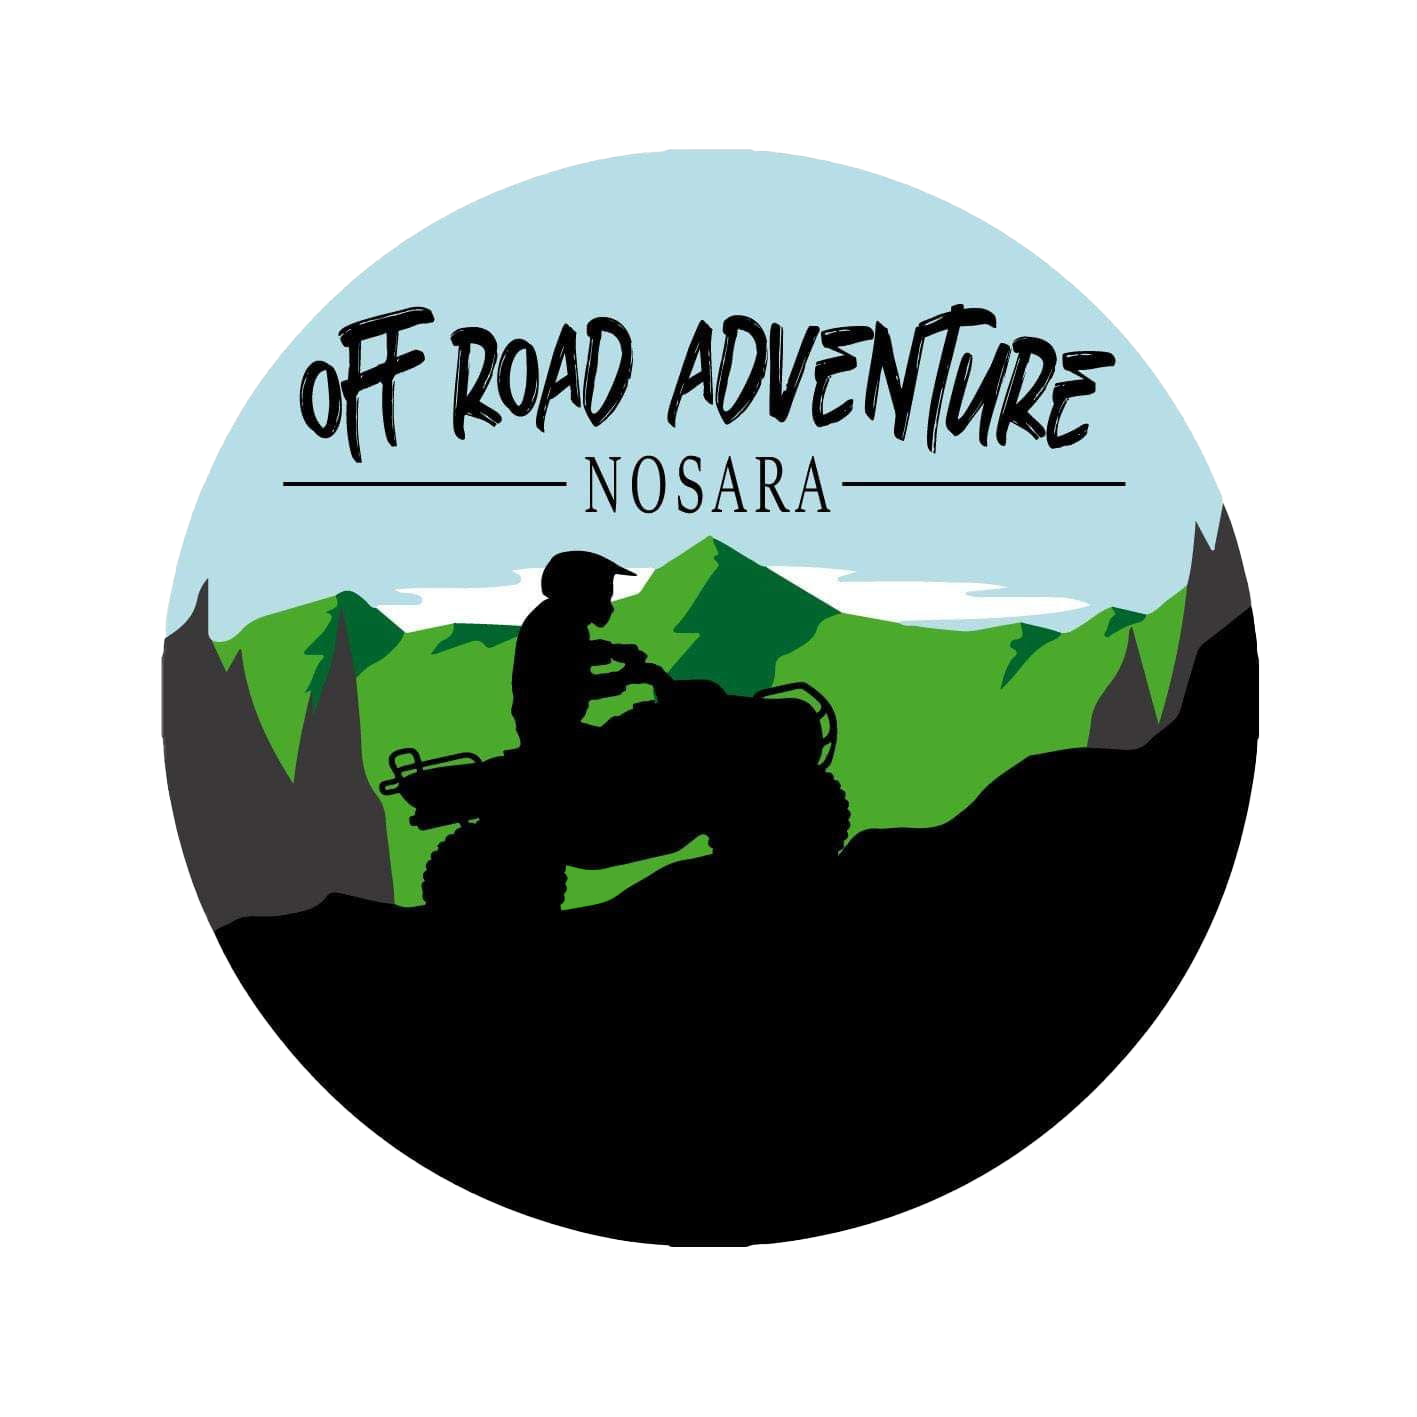 Off Road Adventure Nosara